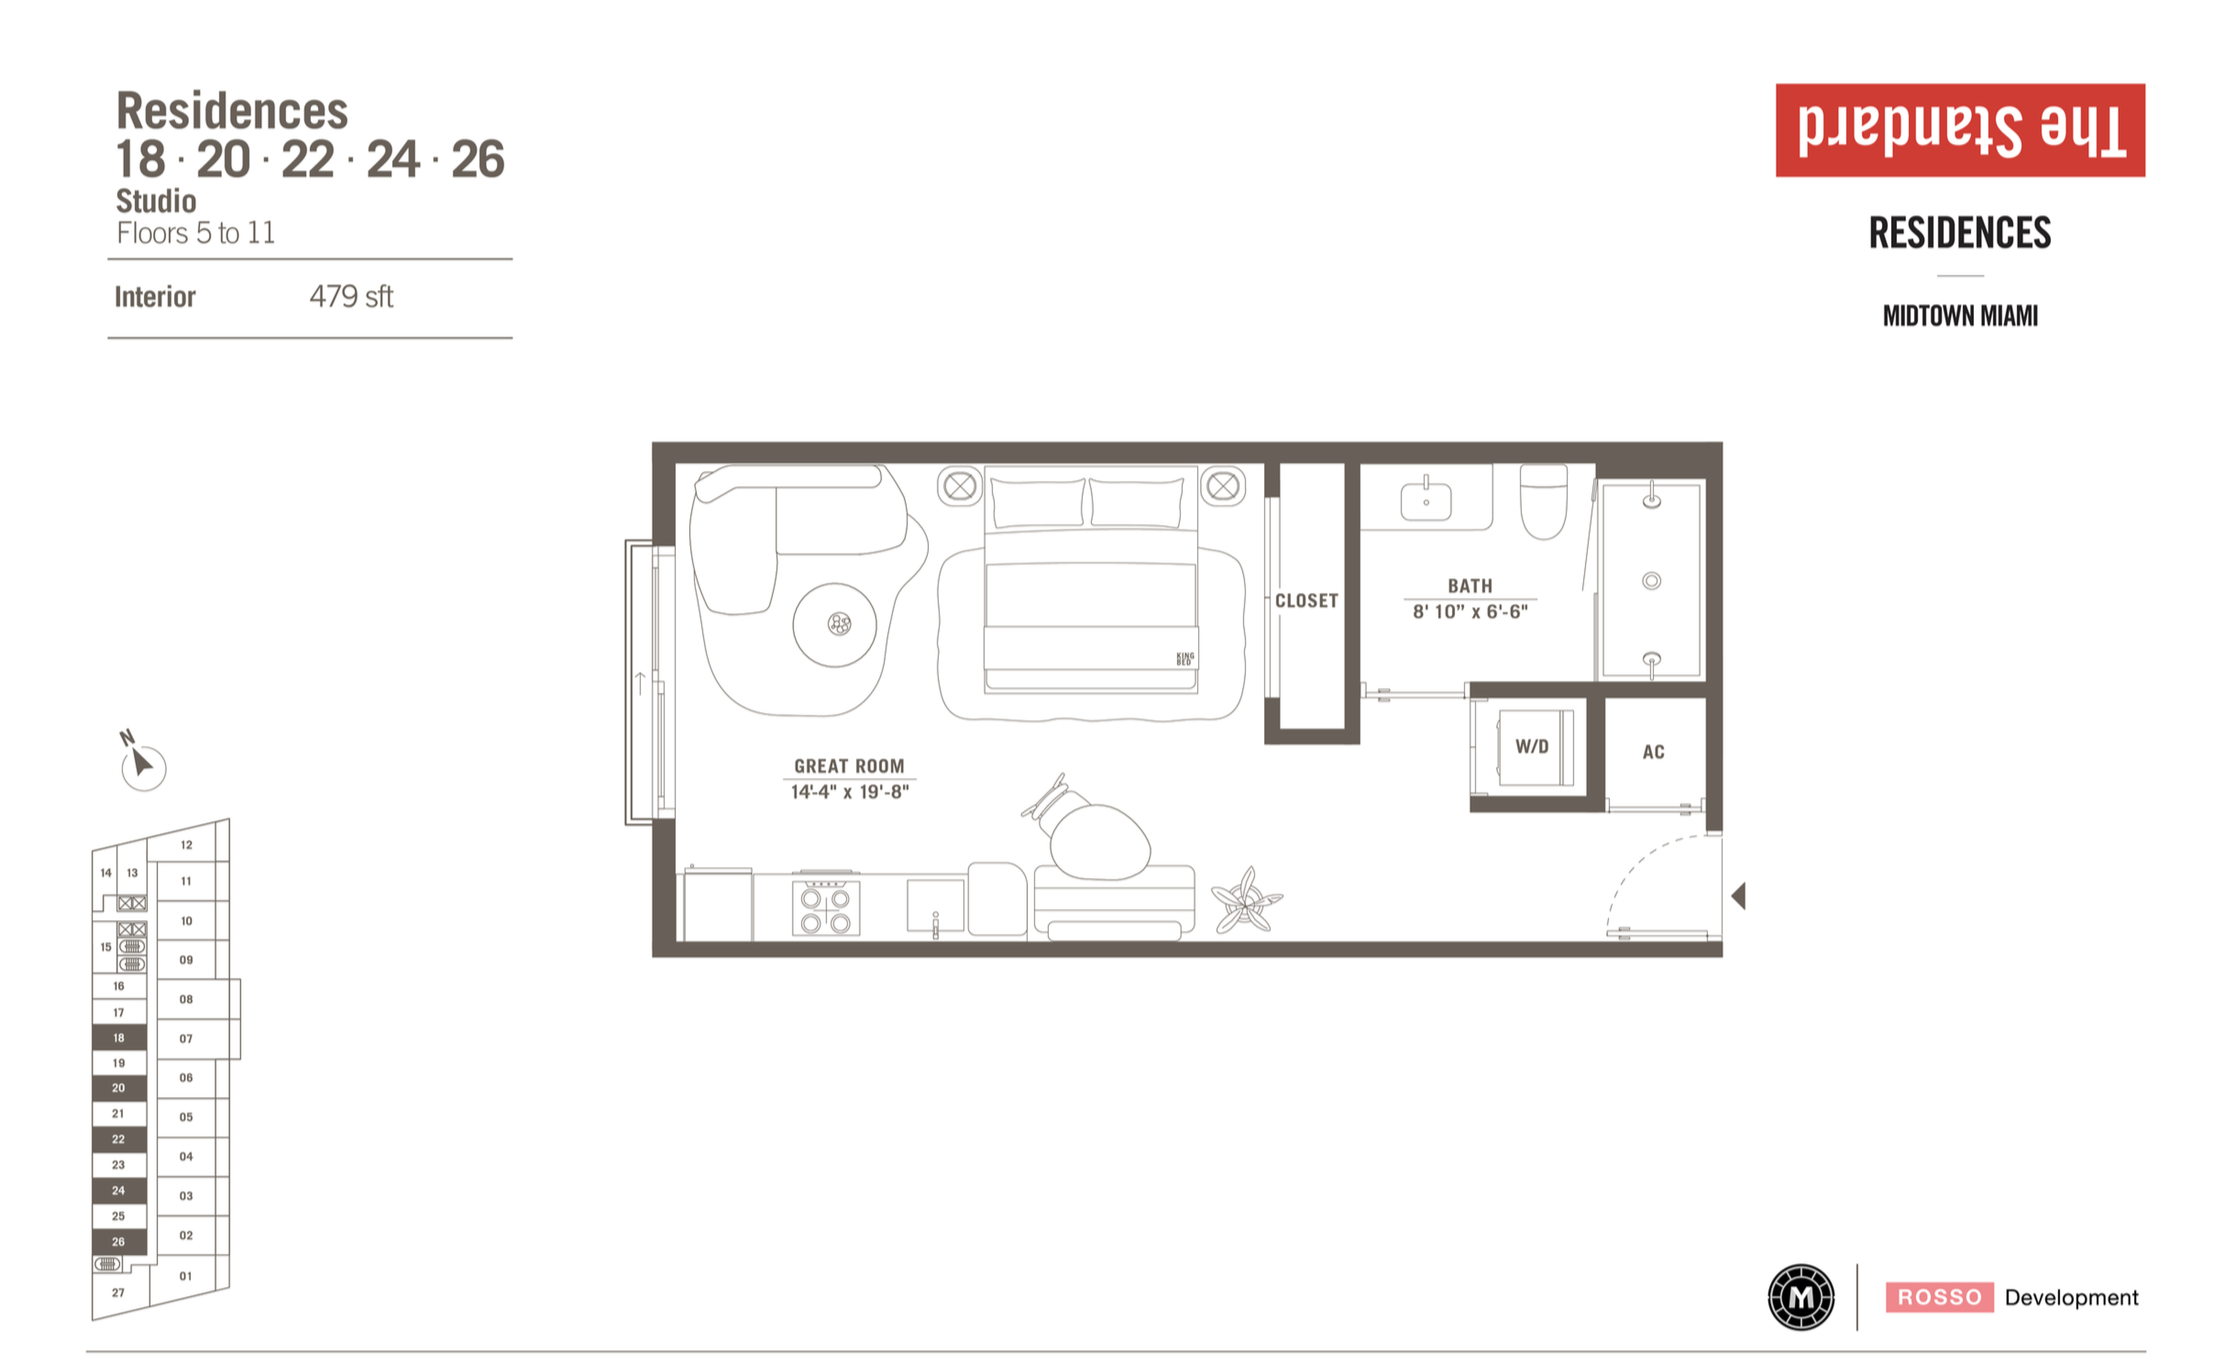 The Standard Residences | Residence 18,20,22,24,26 | Studio | 479 SF | Floor 5-11